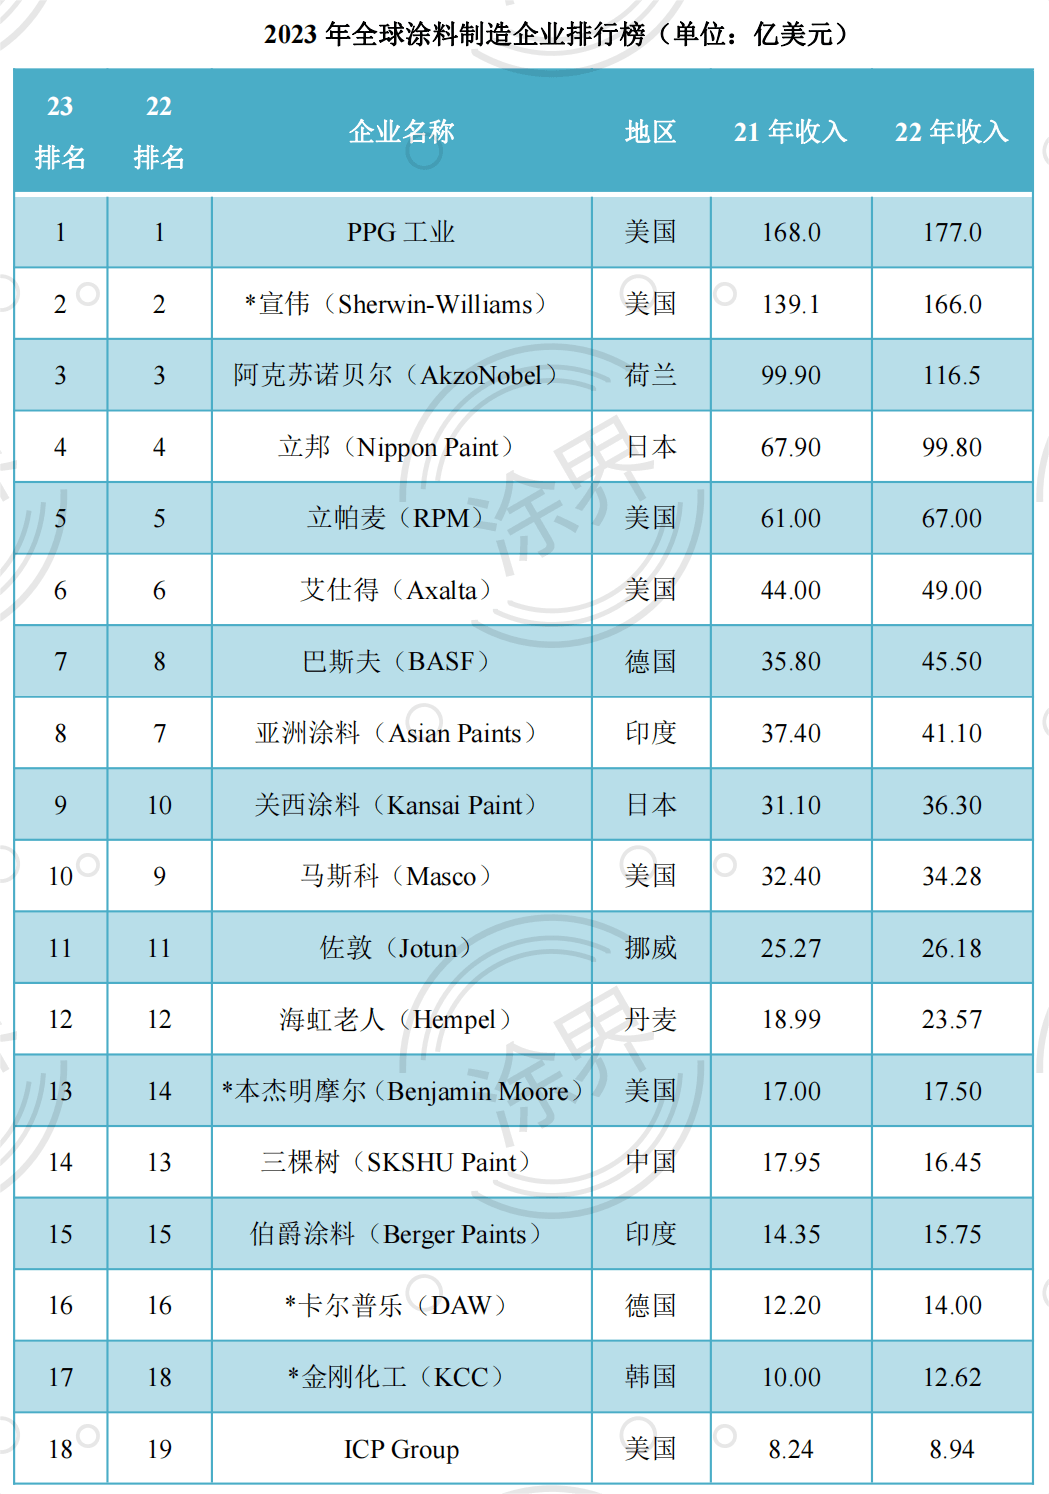 乳胶漆排行榜_2023年度全球油漆和涂料制造商排行榜,中国7家企业上榜